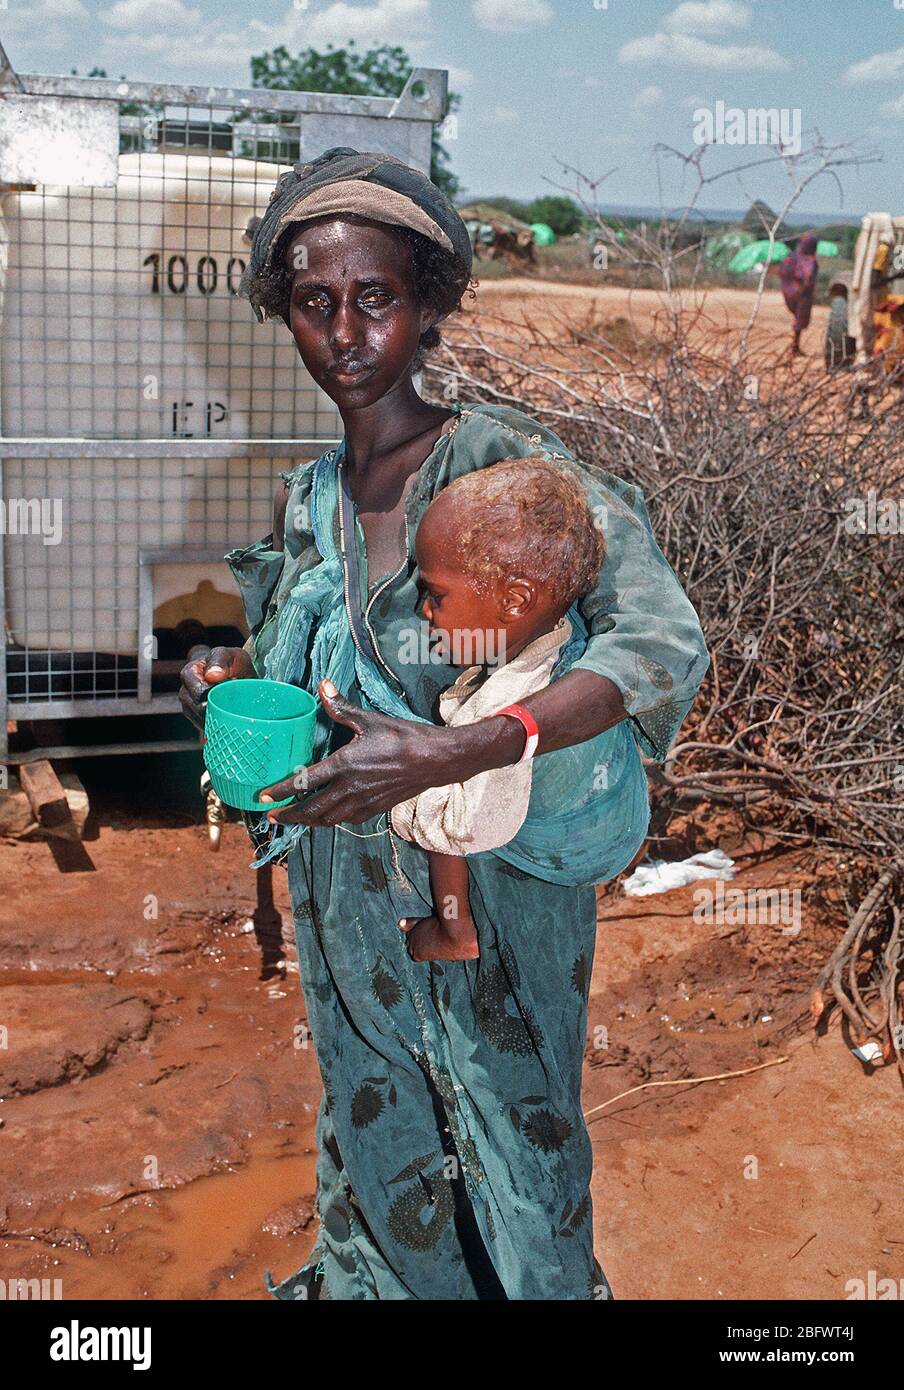 1993 - ein Somalischer Flüchtling Frau hält Ihr Kind, wie Sie in der Nähe ein Wasserspender stand auf einer Notfallstation Einrichten während der Operation Restore Hope Hilfsmaßnahmen (Badera Somalia) Stockfoto